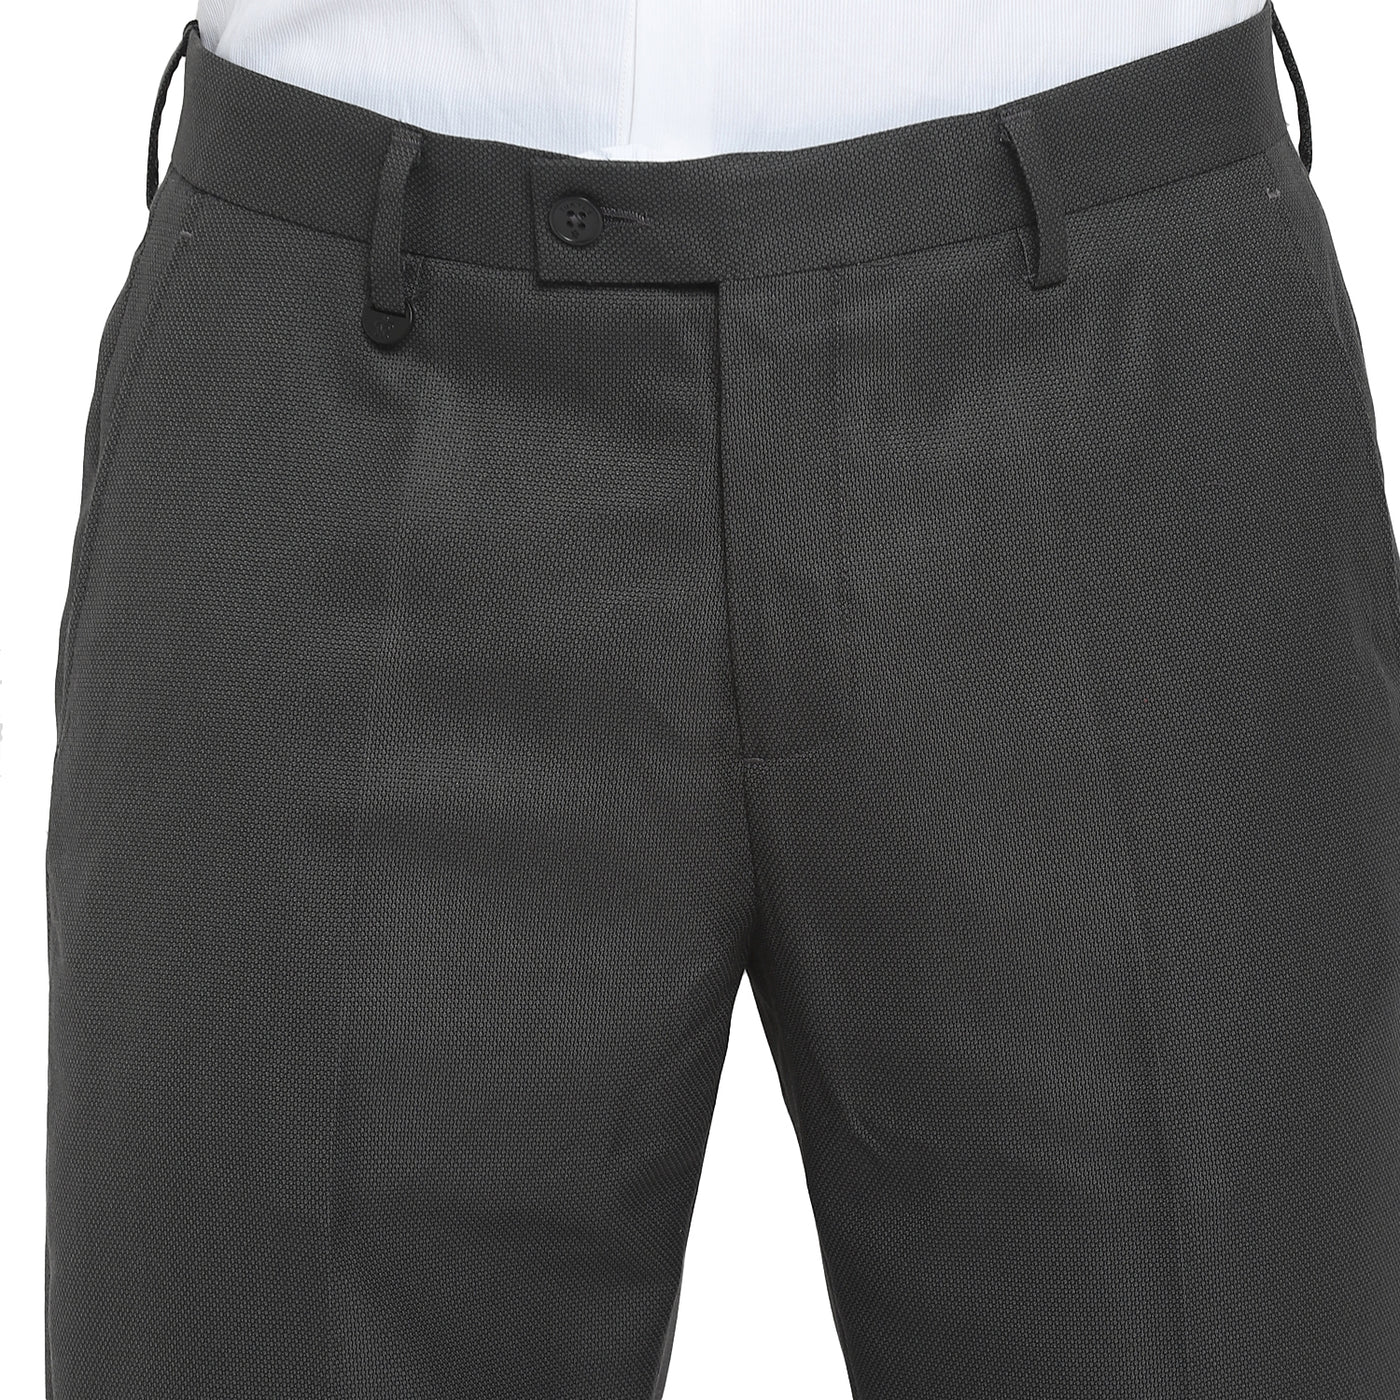 Black Slim Fit Self Design Trouser